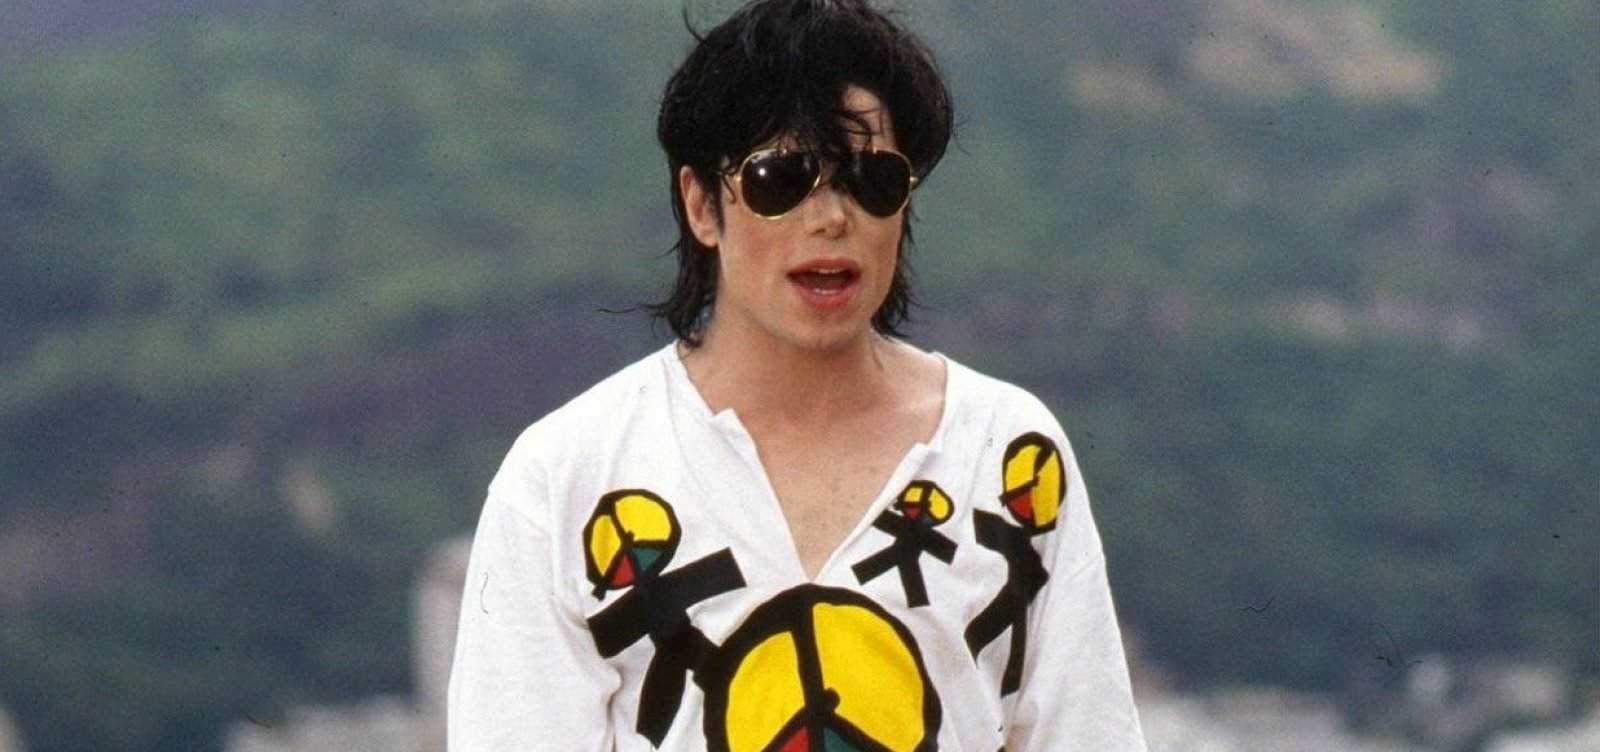 Metade do catálogo de músicas de Michael Jackson é vendido por R$ 3 bi em maior transação da história